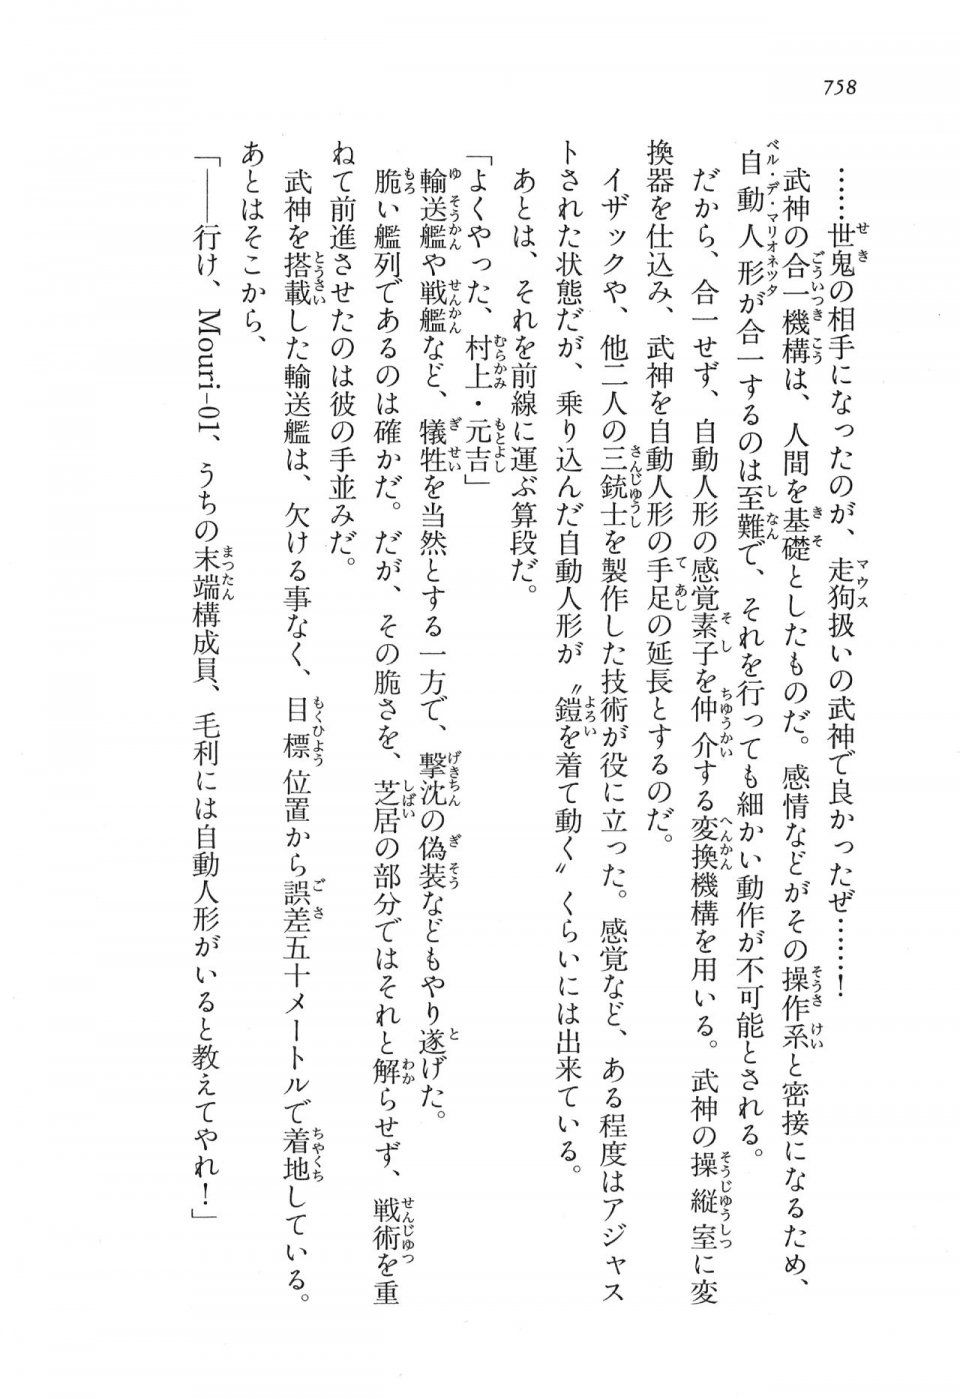 Kyoukai Senjou no Horizon LN Vol 16(7A) - Photo #758